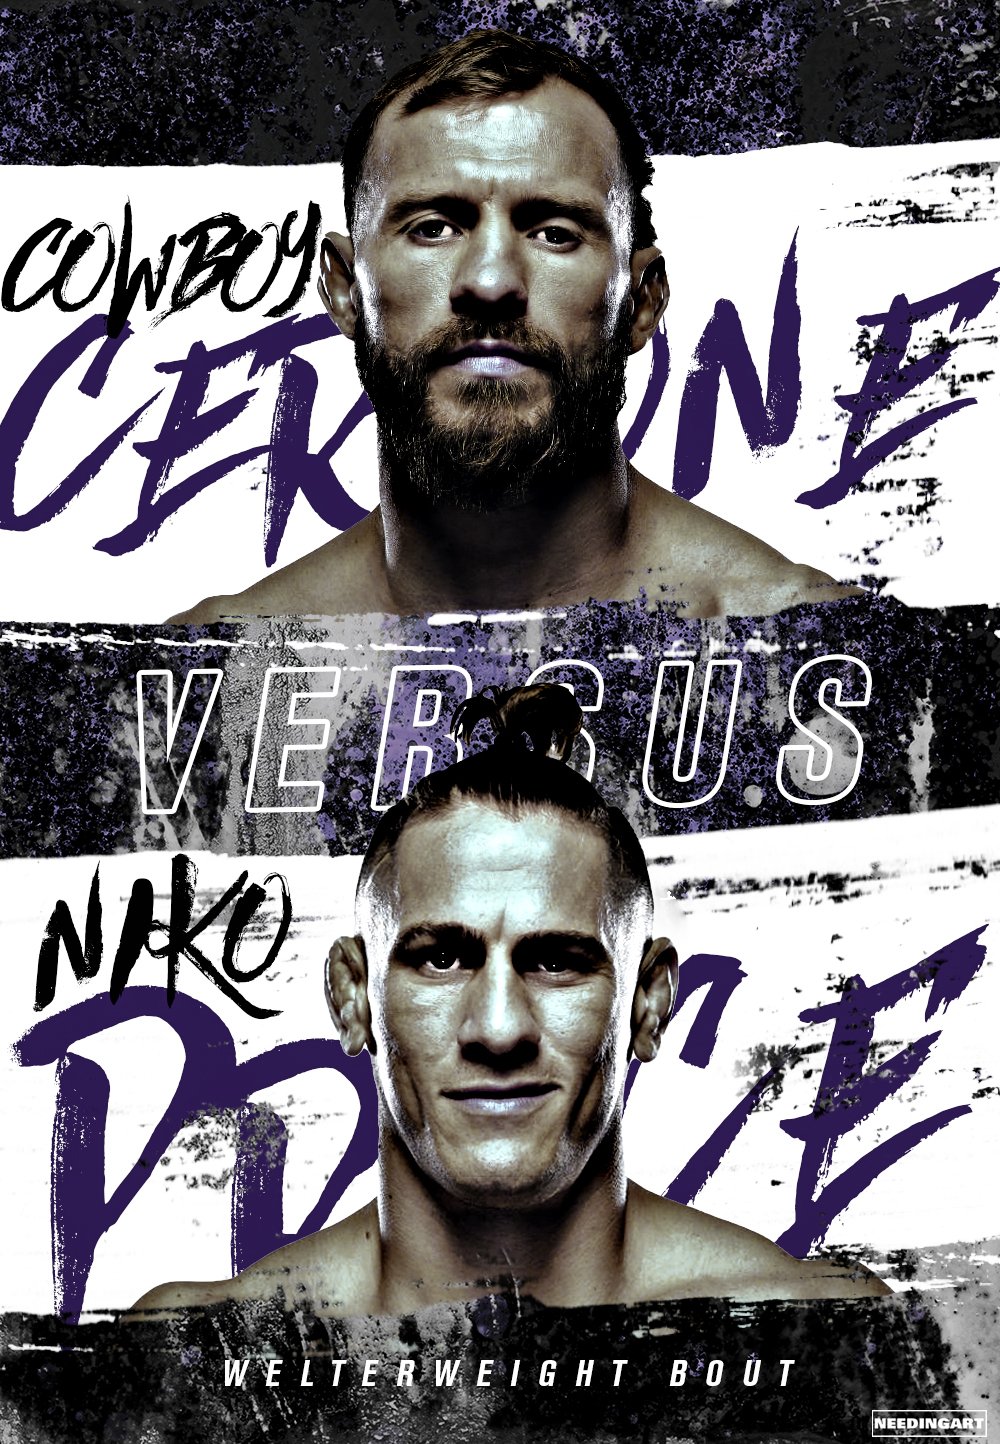 UFC on ESPN+ 36 - Las vegas - Poster et affiche